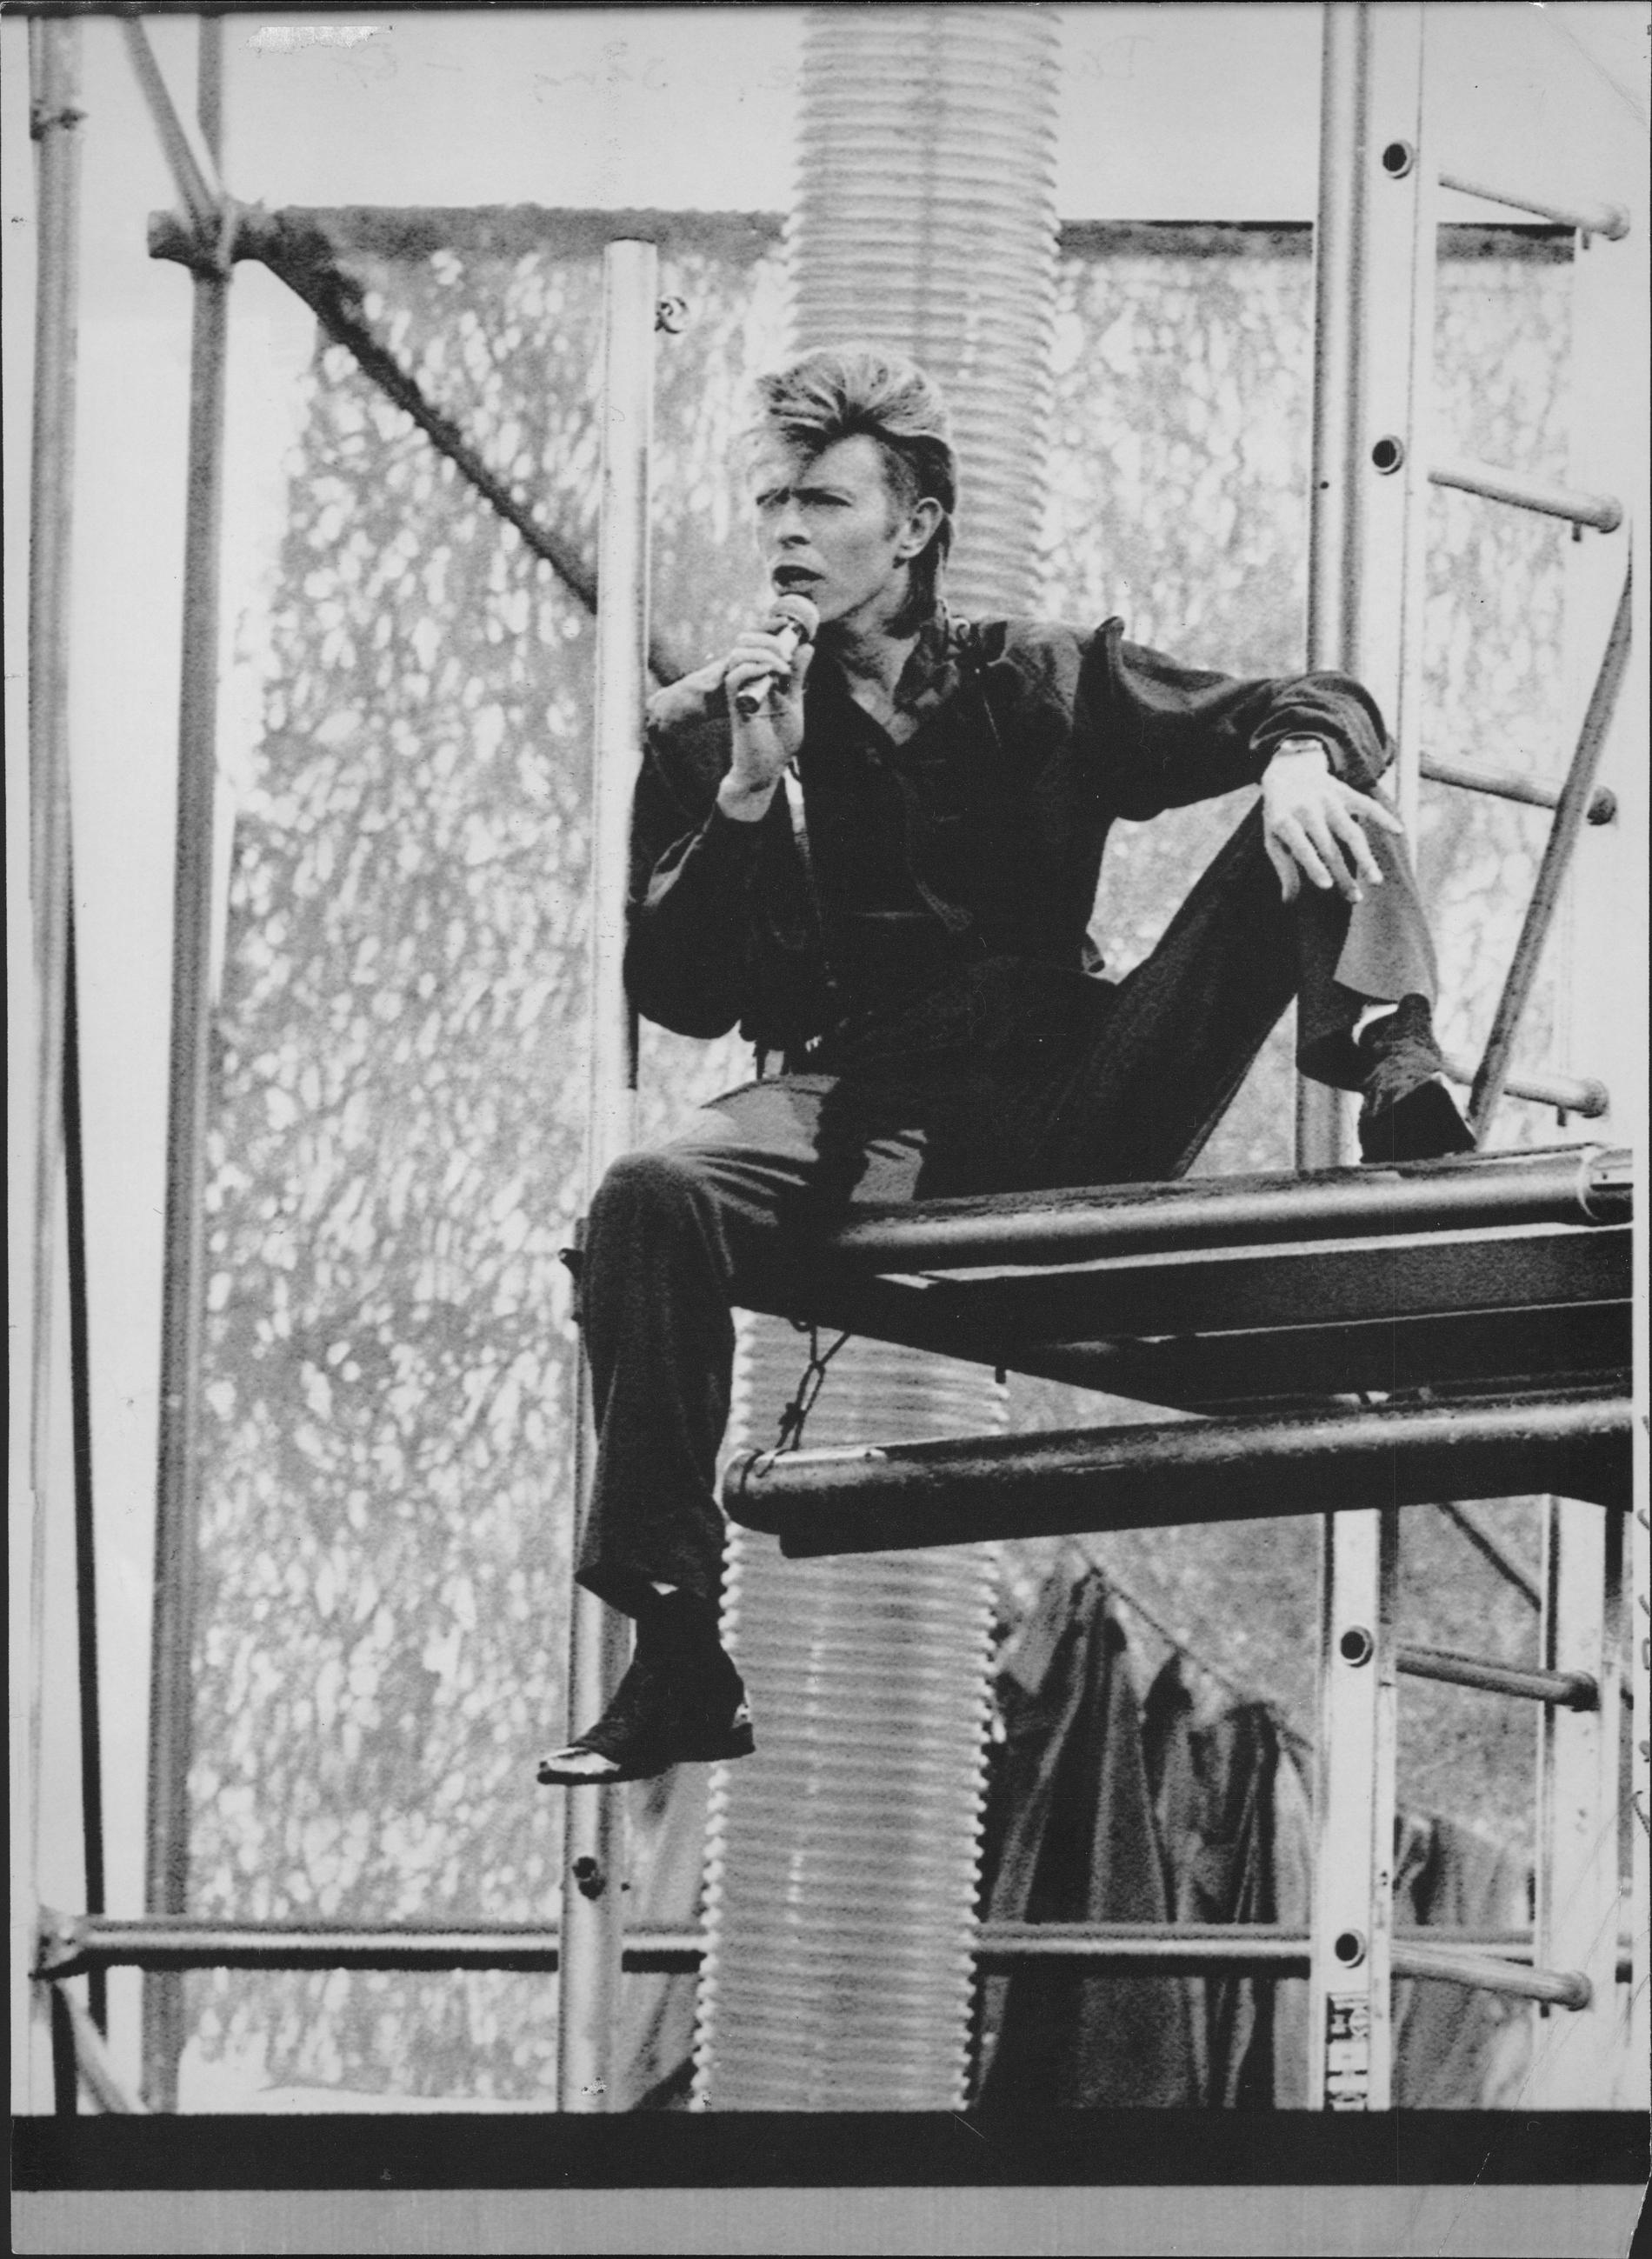 David Bowie tog sin ”Glass spider tour” till Eriksbergsvarvet i Göteborg den 27 juni 1987.